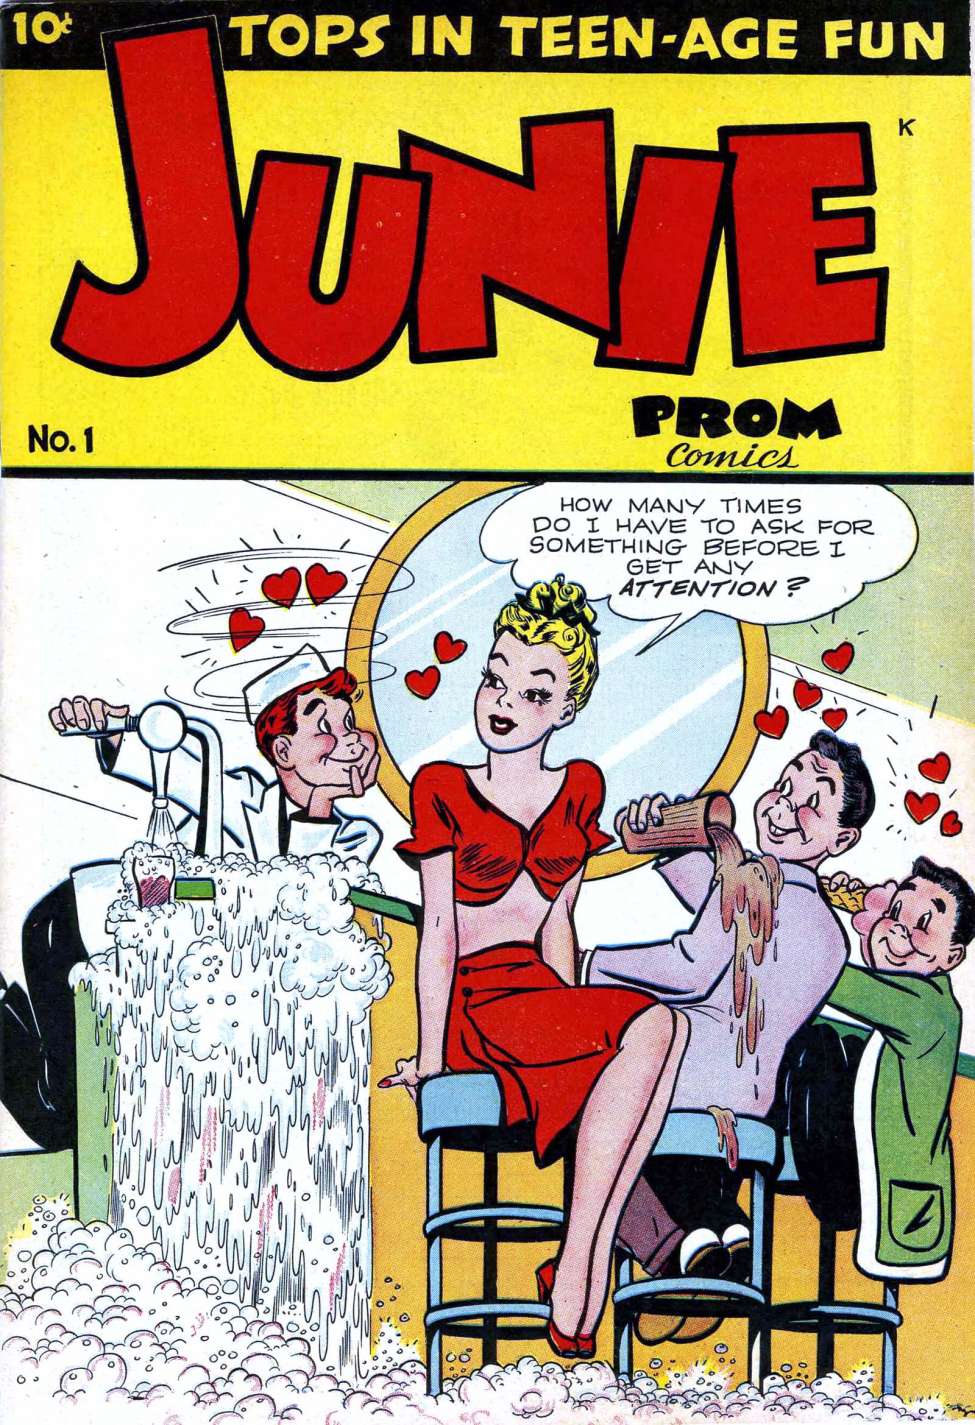 Junie Prom Comics #1, Dearfield